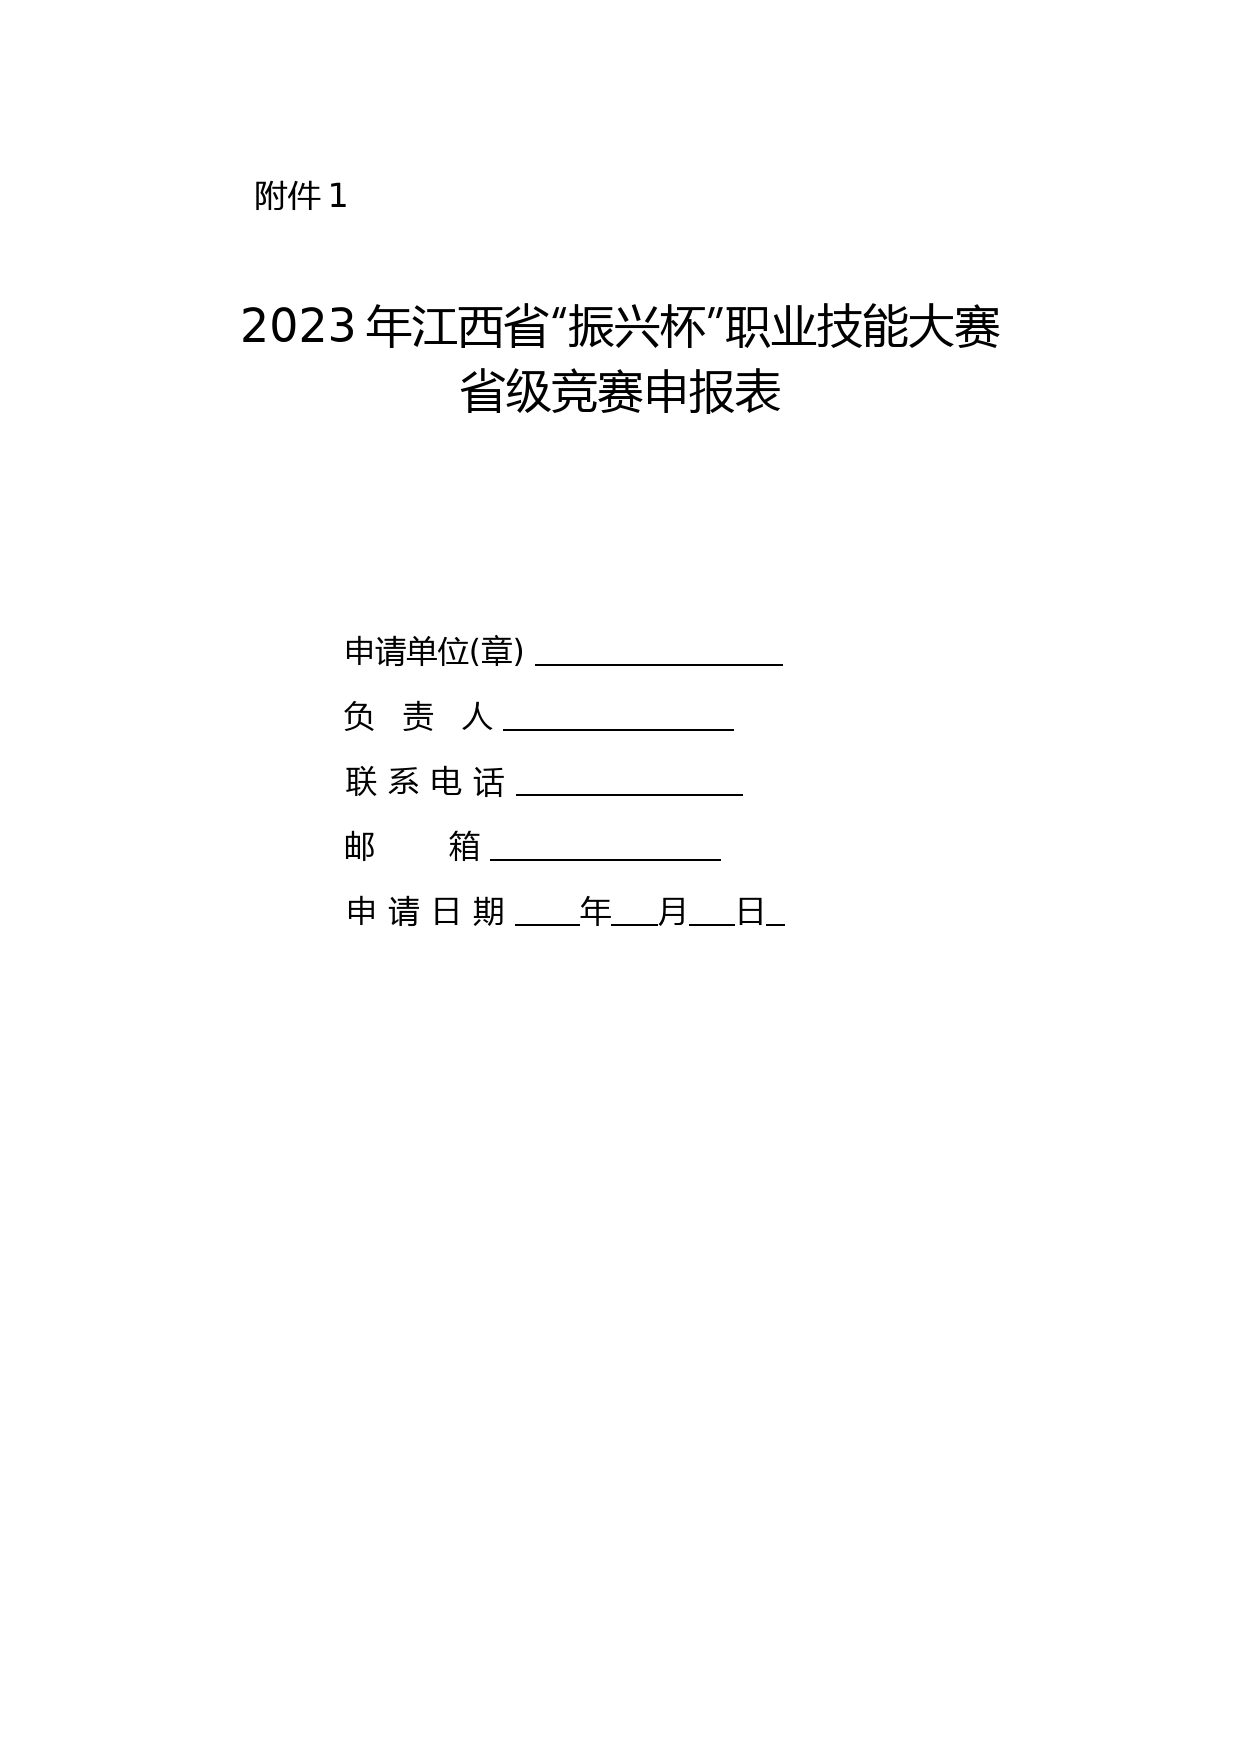 2023年江西省“振兴杯”职业技能大赛省级竞赛申报表、职业技能竞赛组织实施方案参考提纲